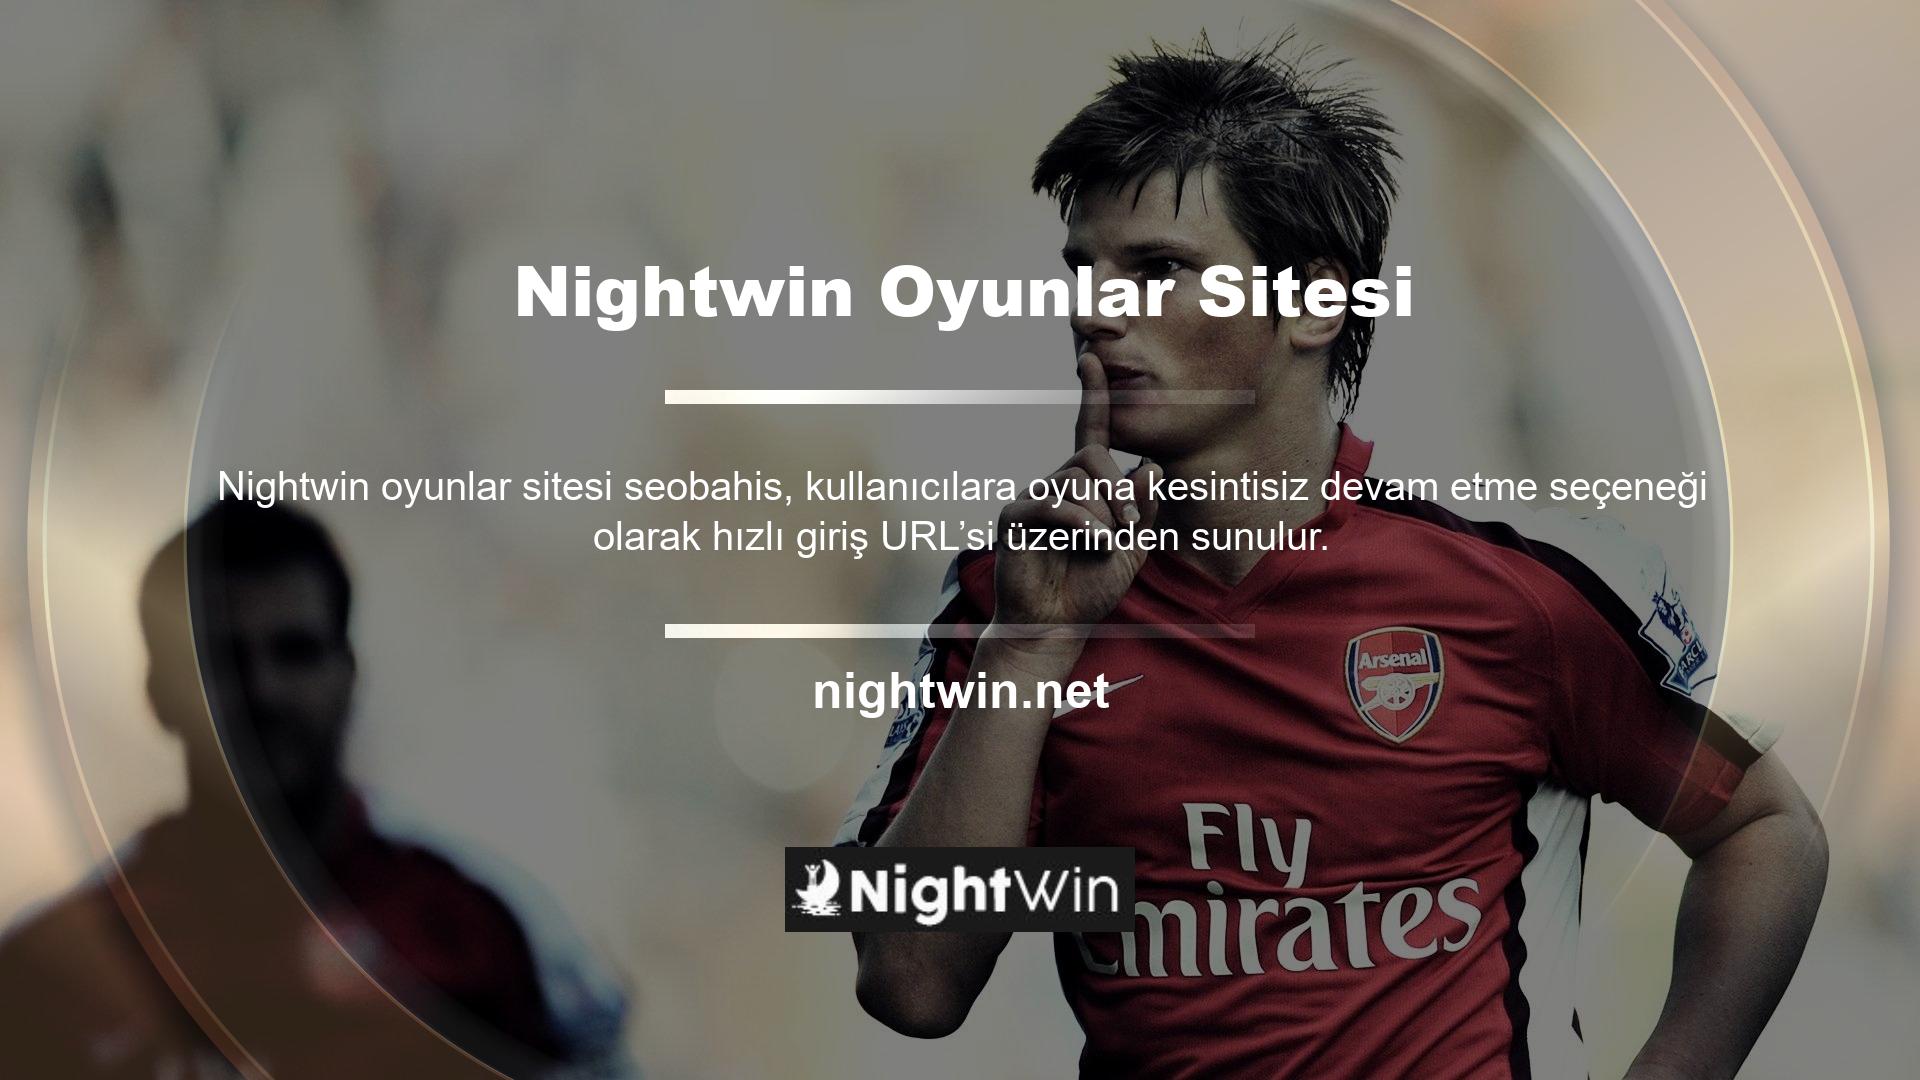 Nightwin kesintisiz masaüstü ve mobil uygulama seçenekleri sunmaya devam ediyor